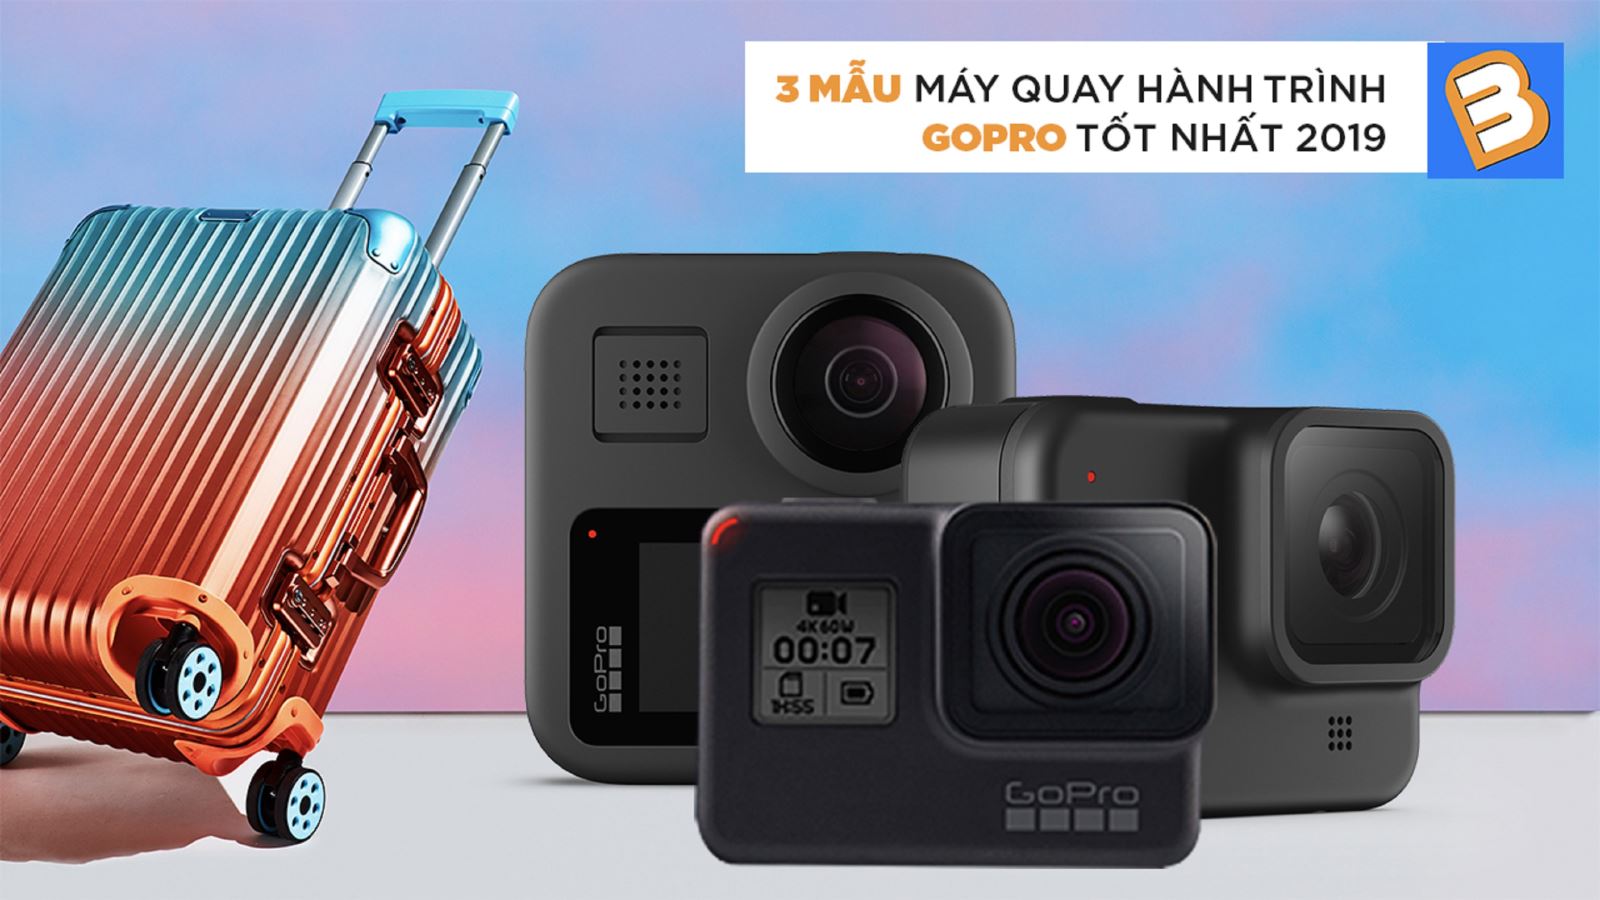 3 mẫu máy quay hành trình GoPro tốt nhất 2019